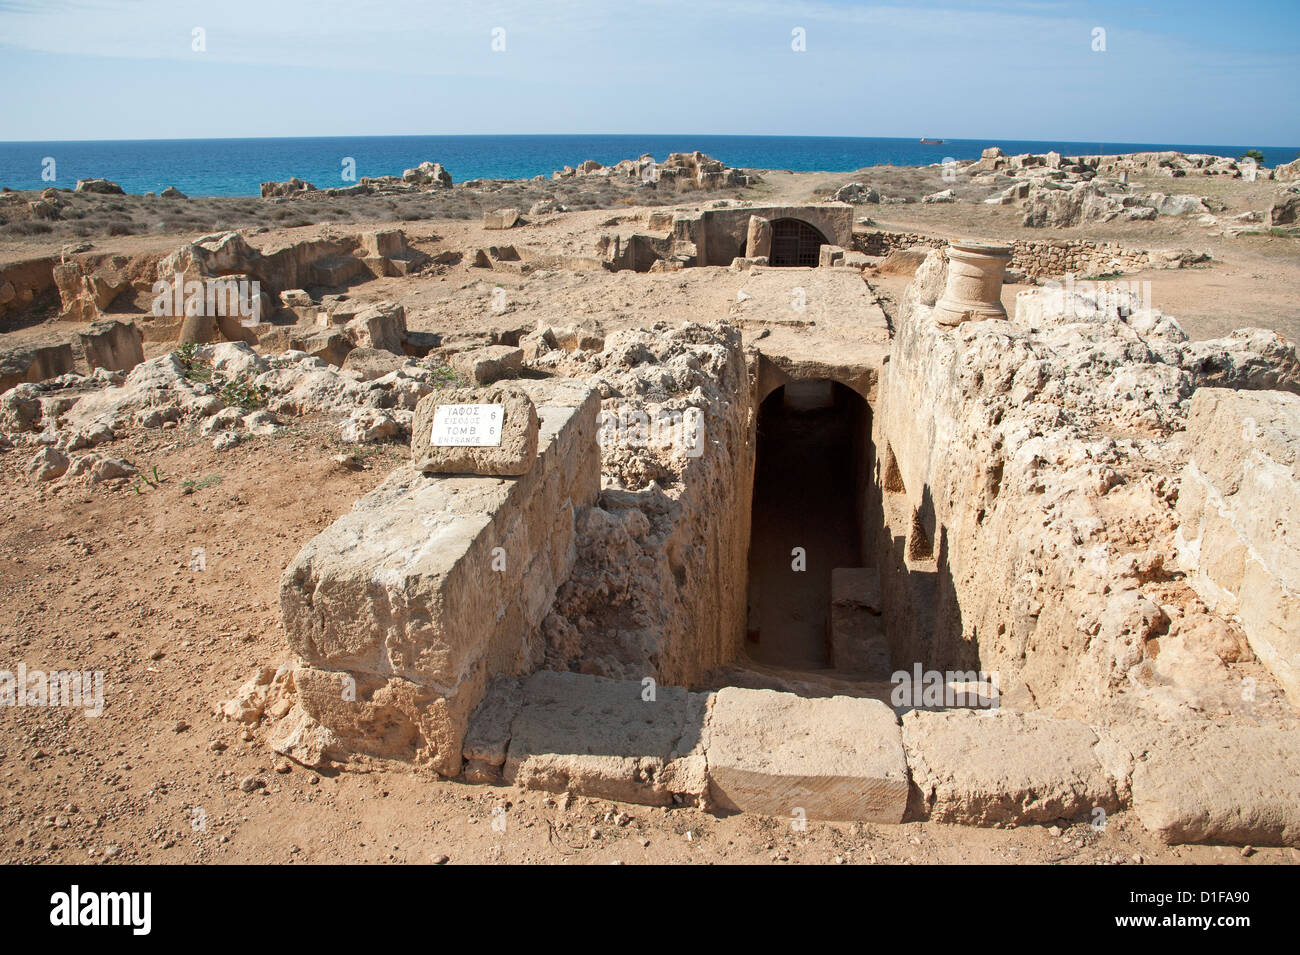 Tombe dei Re maggiore attrazione archeologica in Paphos Cipro tombe sotterranee risalente al III secolo A.C. Kato Pafos Foto Stock